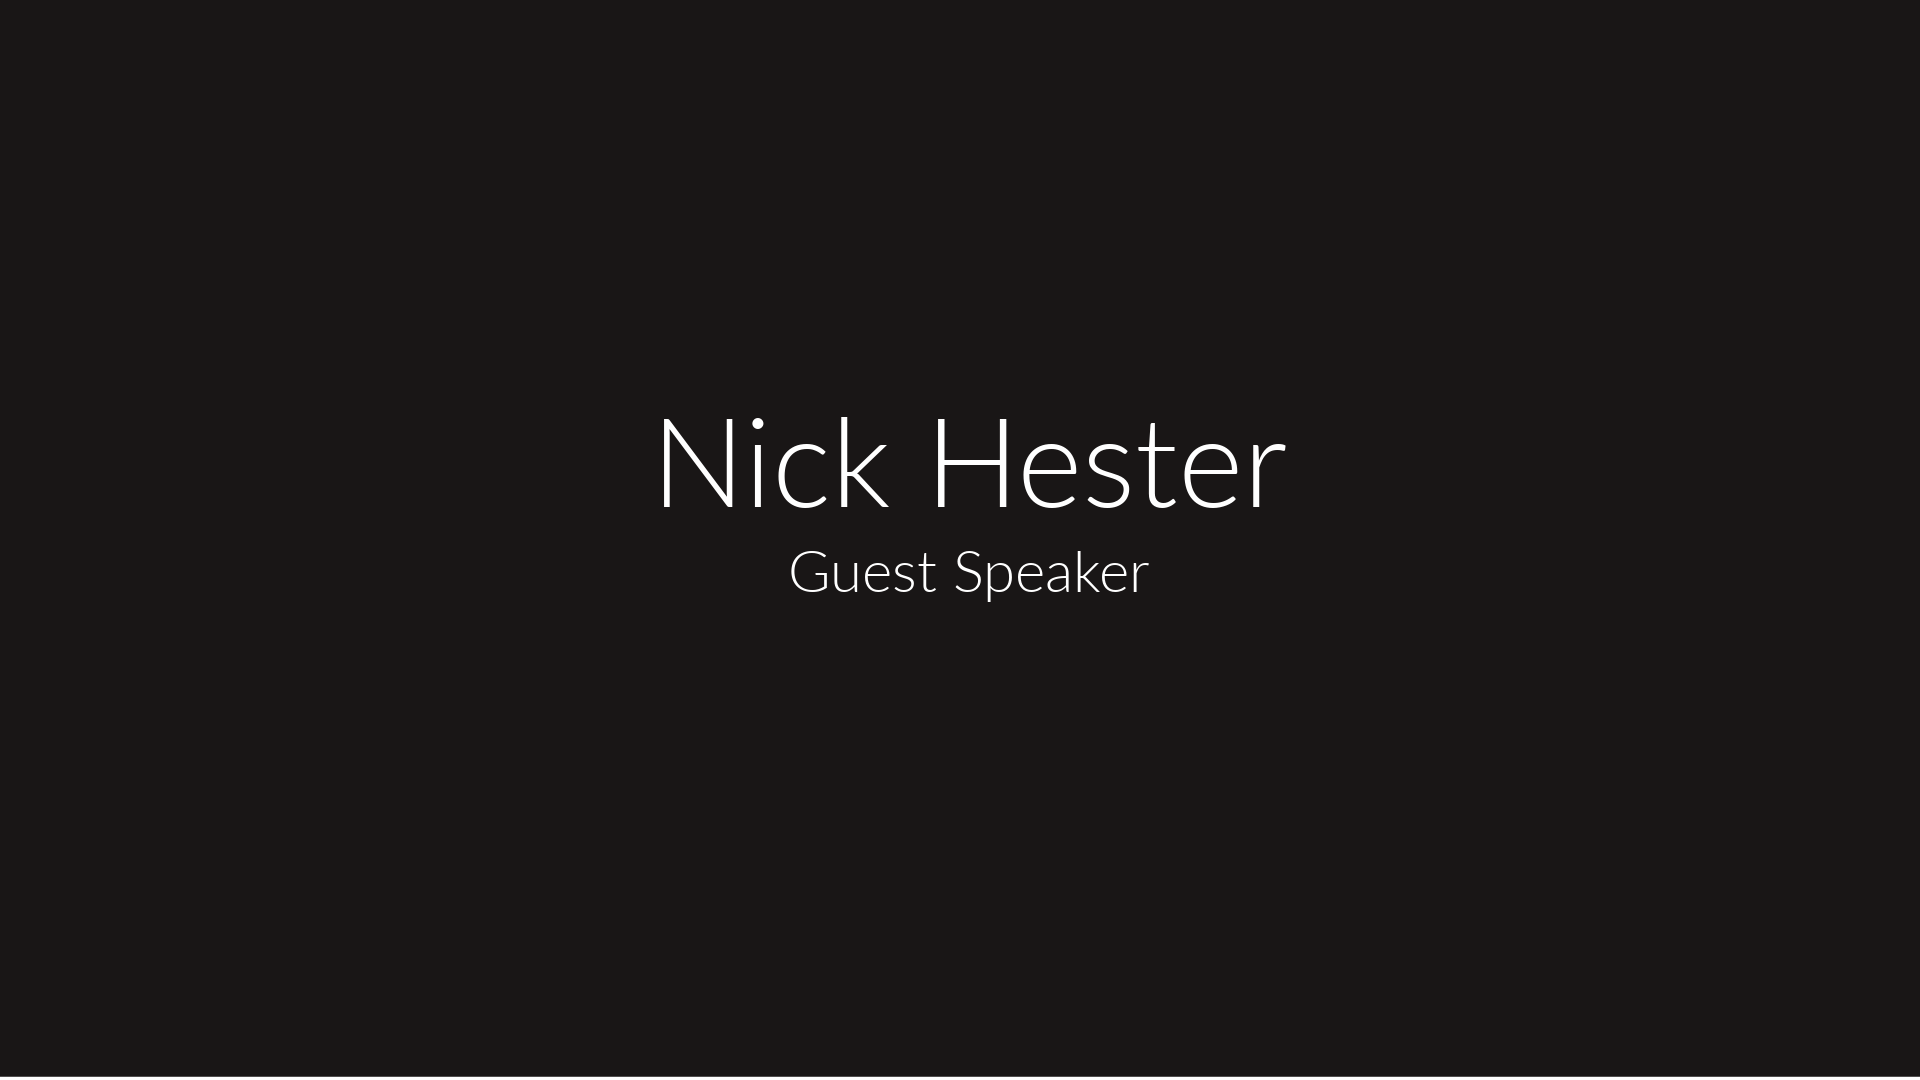 Nick Hester, Guest Speaker